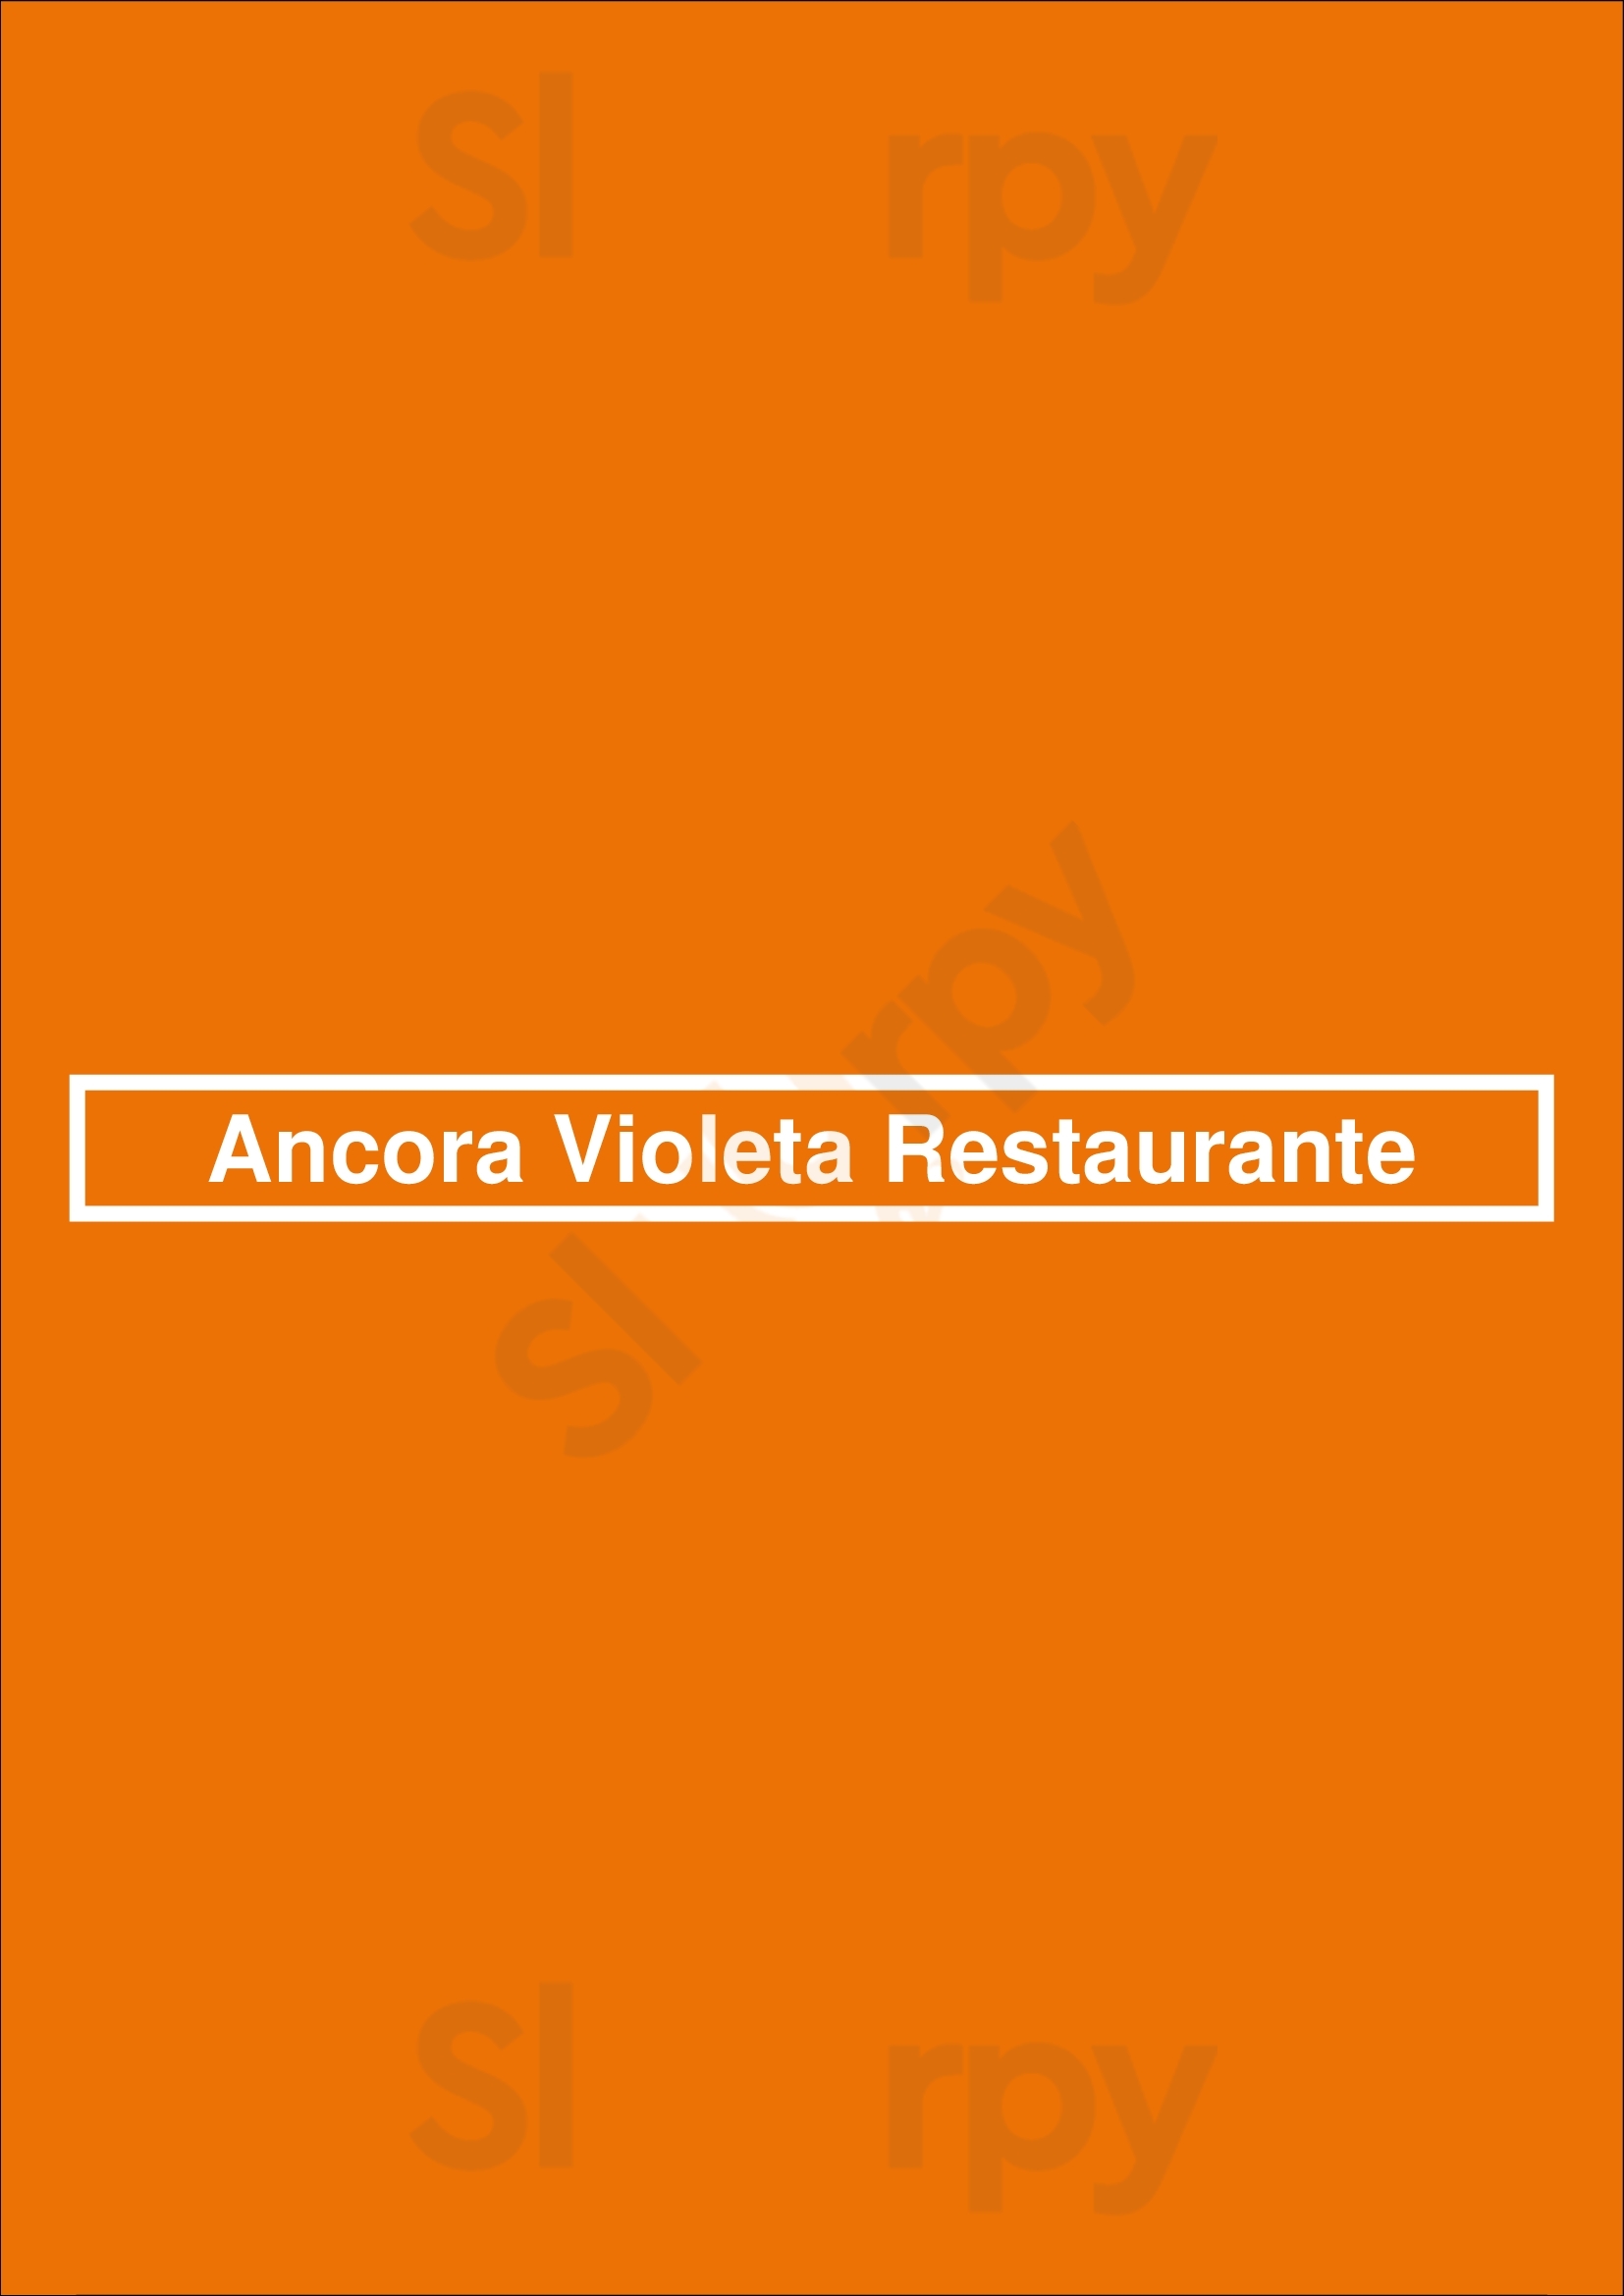 Ancora Violeta Restaurante Leça da Palmeira Menu - 1